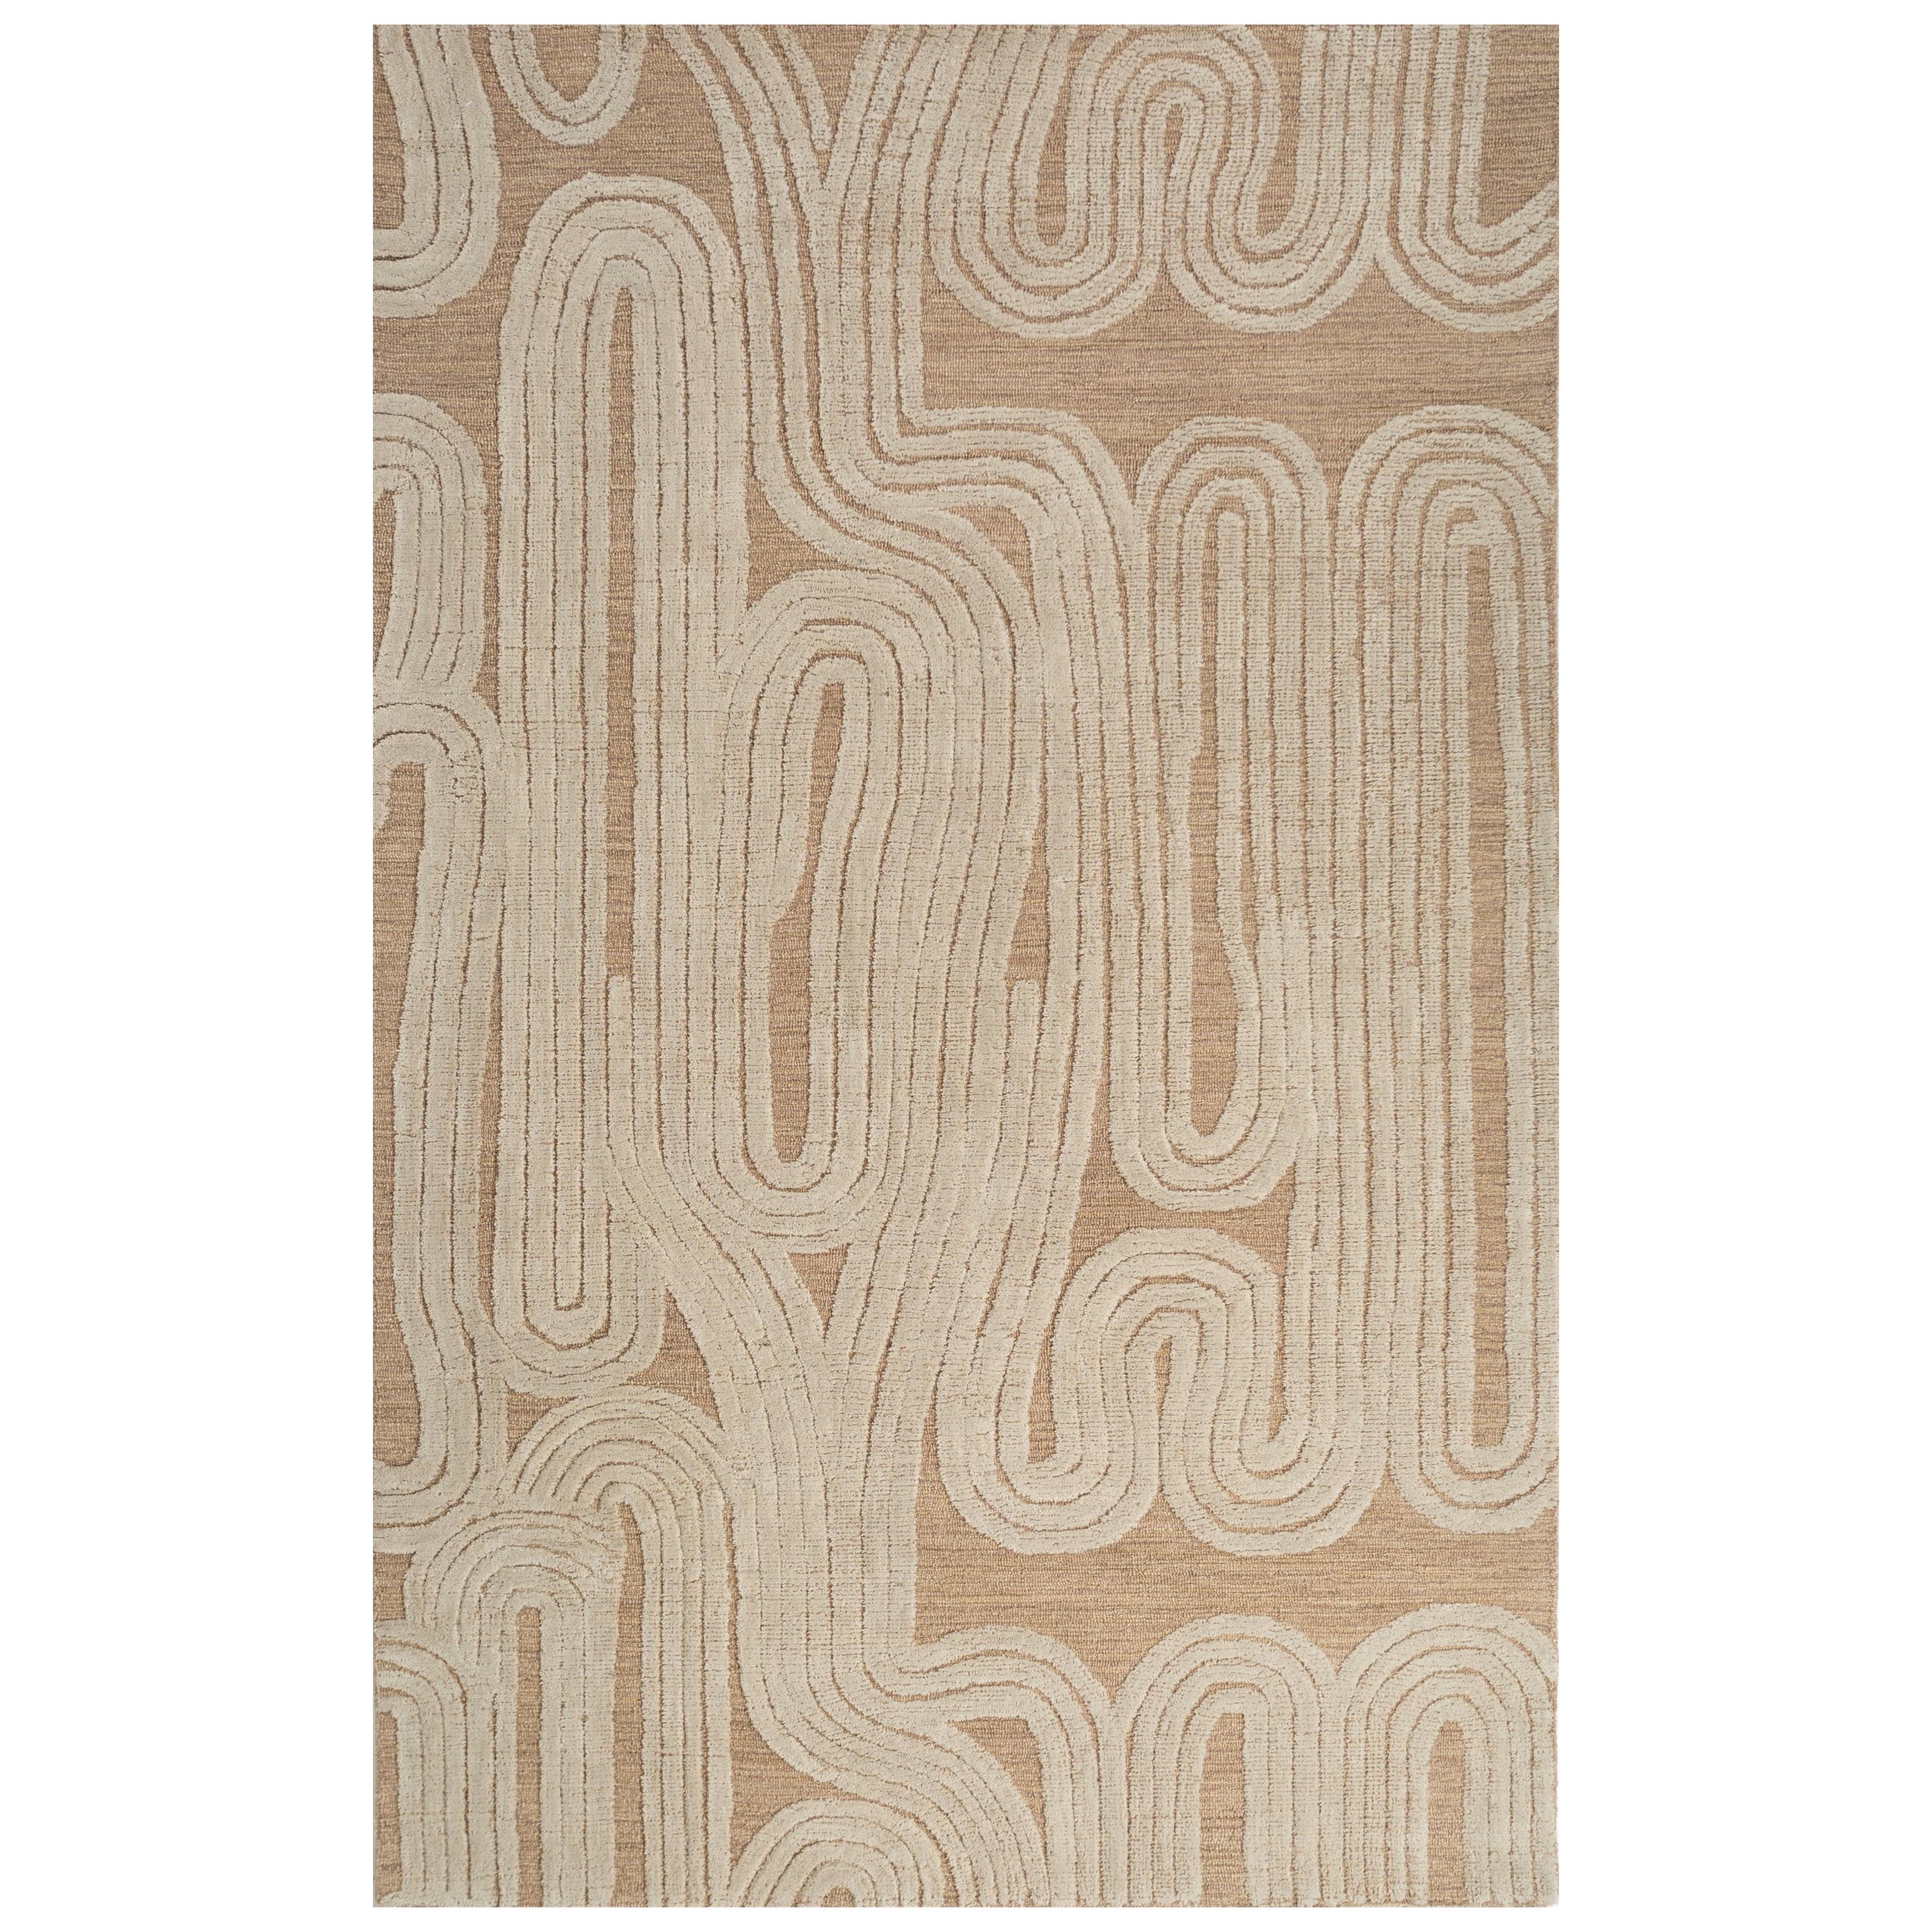 Vergoldeter Grove Clay Weißer handgetufteter Teppich 180x270 cm, vergoldet